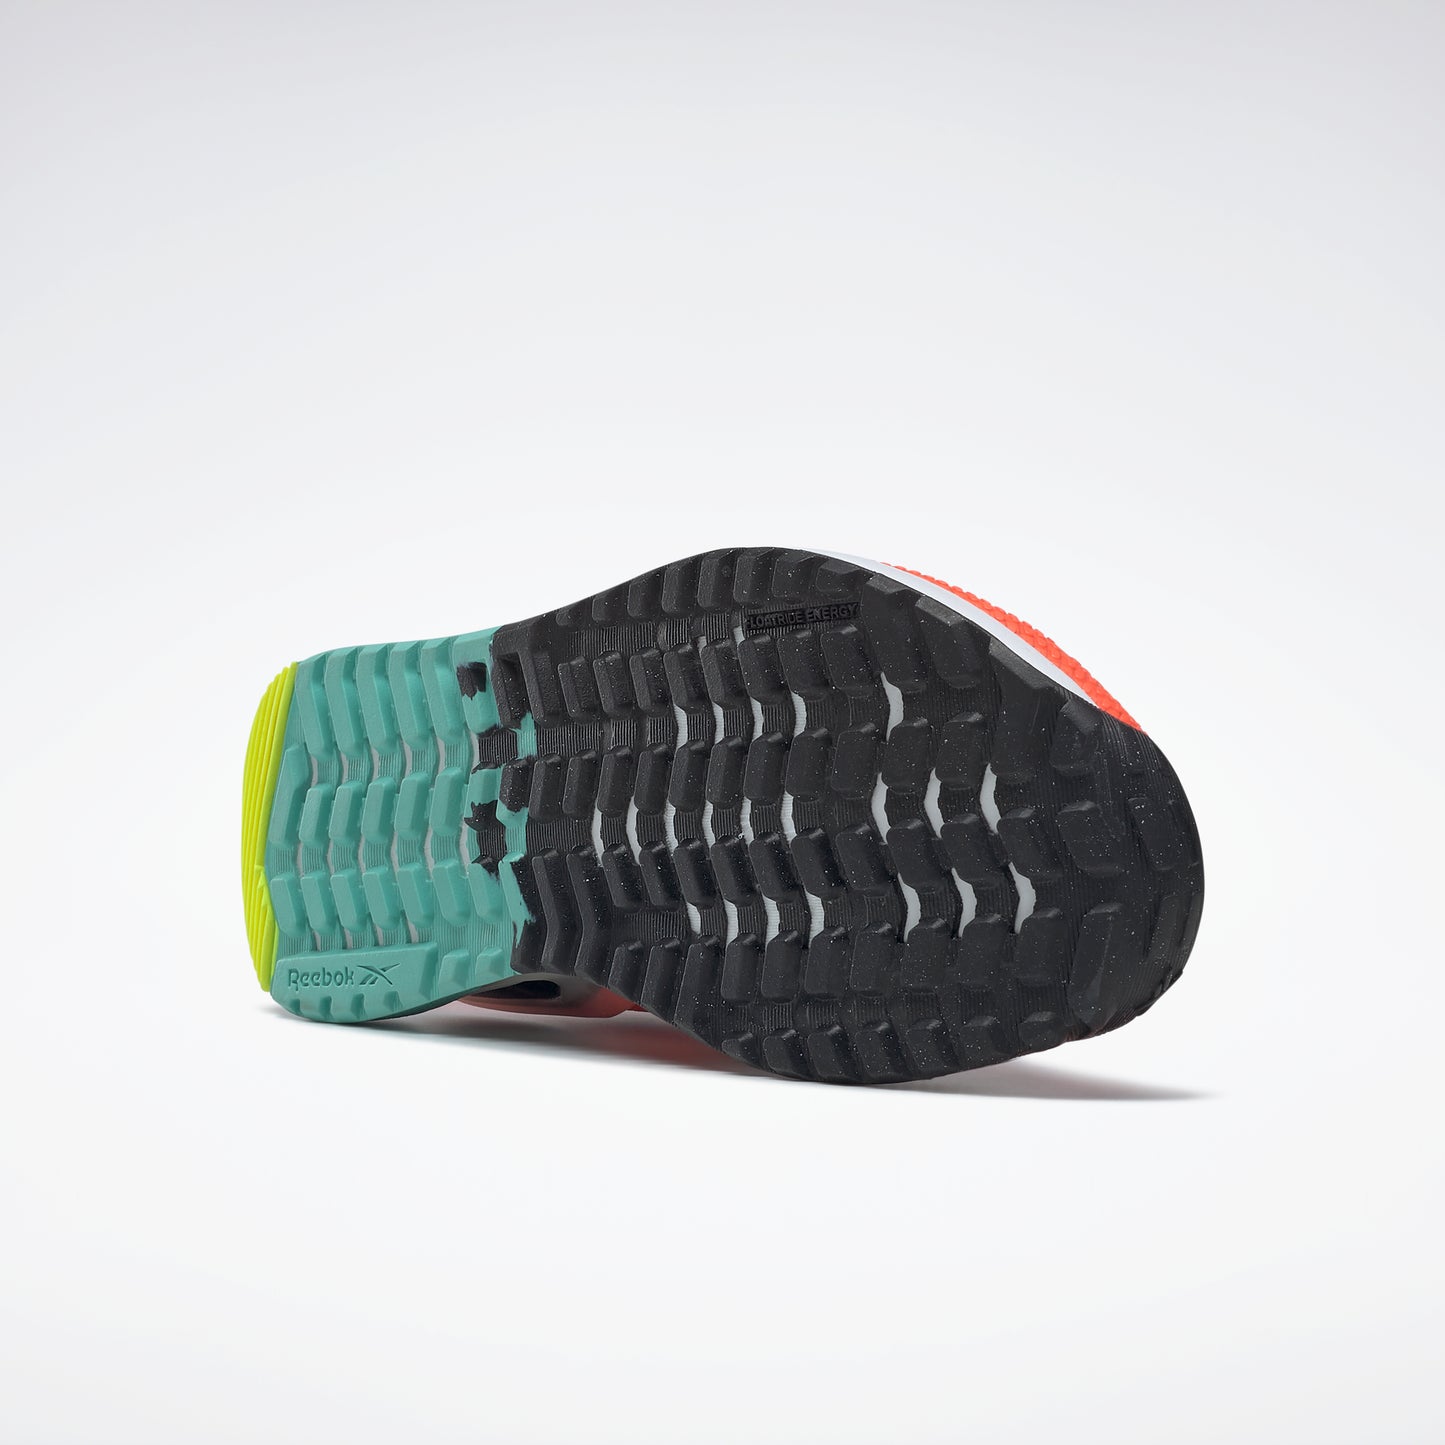 Reebok Footwear Women Nano X2 Tr Adventure Shoes Orgfla/Cblack/Soacye